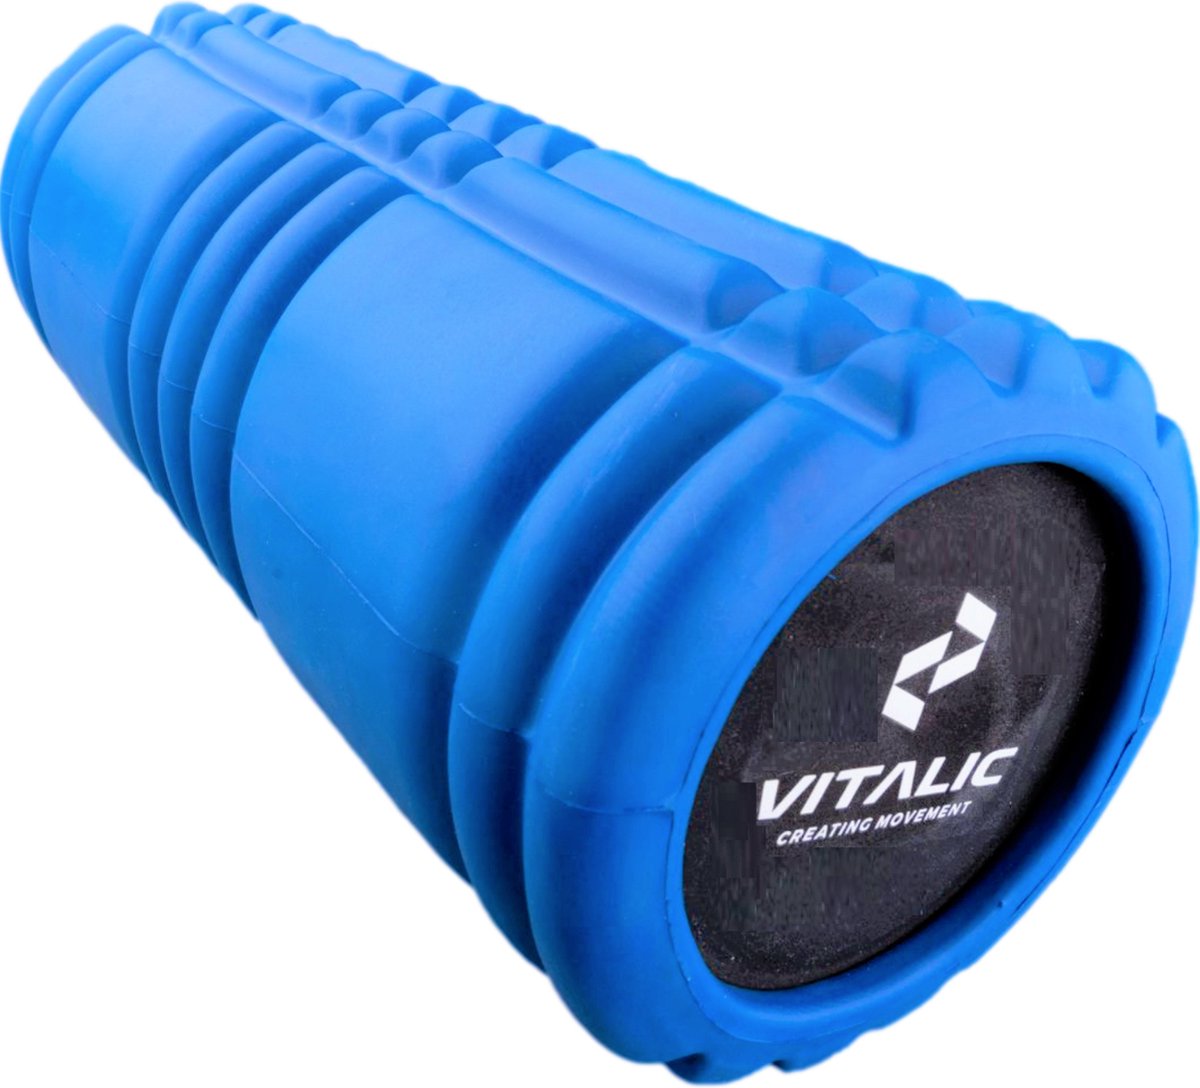 MASSIEVE Foam Roller set voor Rug, Nek en Lichaam massage roller - Trigger point foamrollers | Vitalic